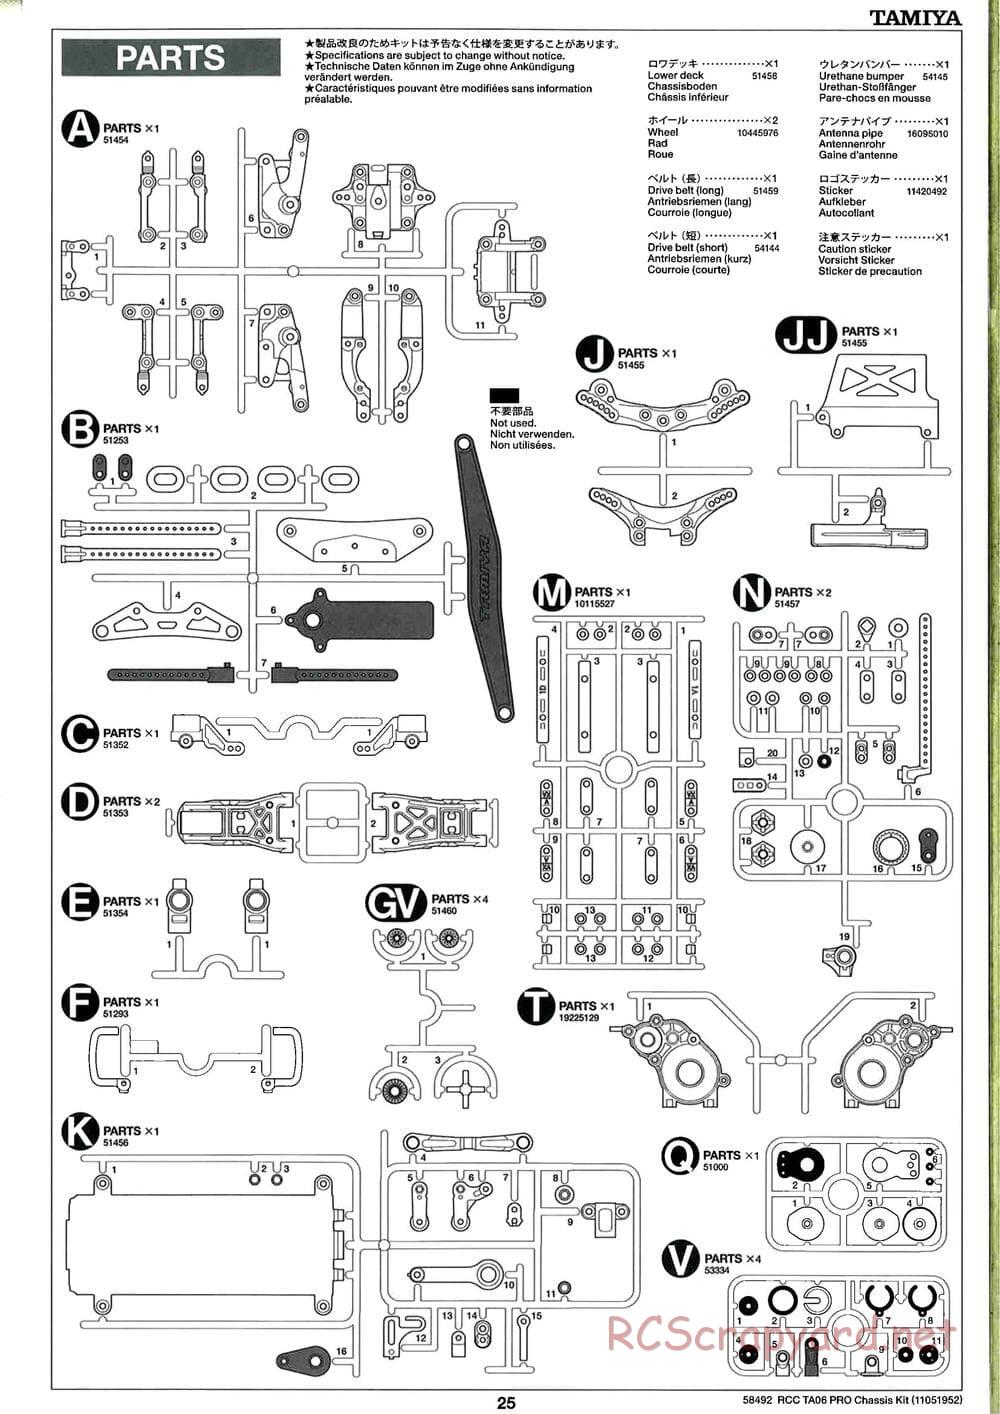 Tamiya - TA06 Pro Chassis - Manual - Page 25